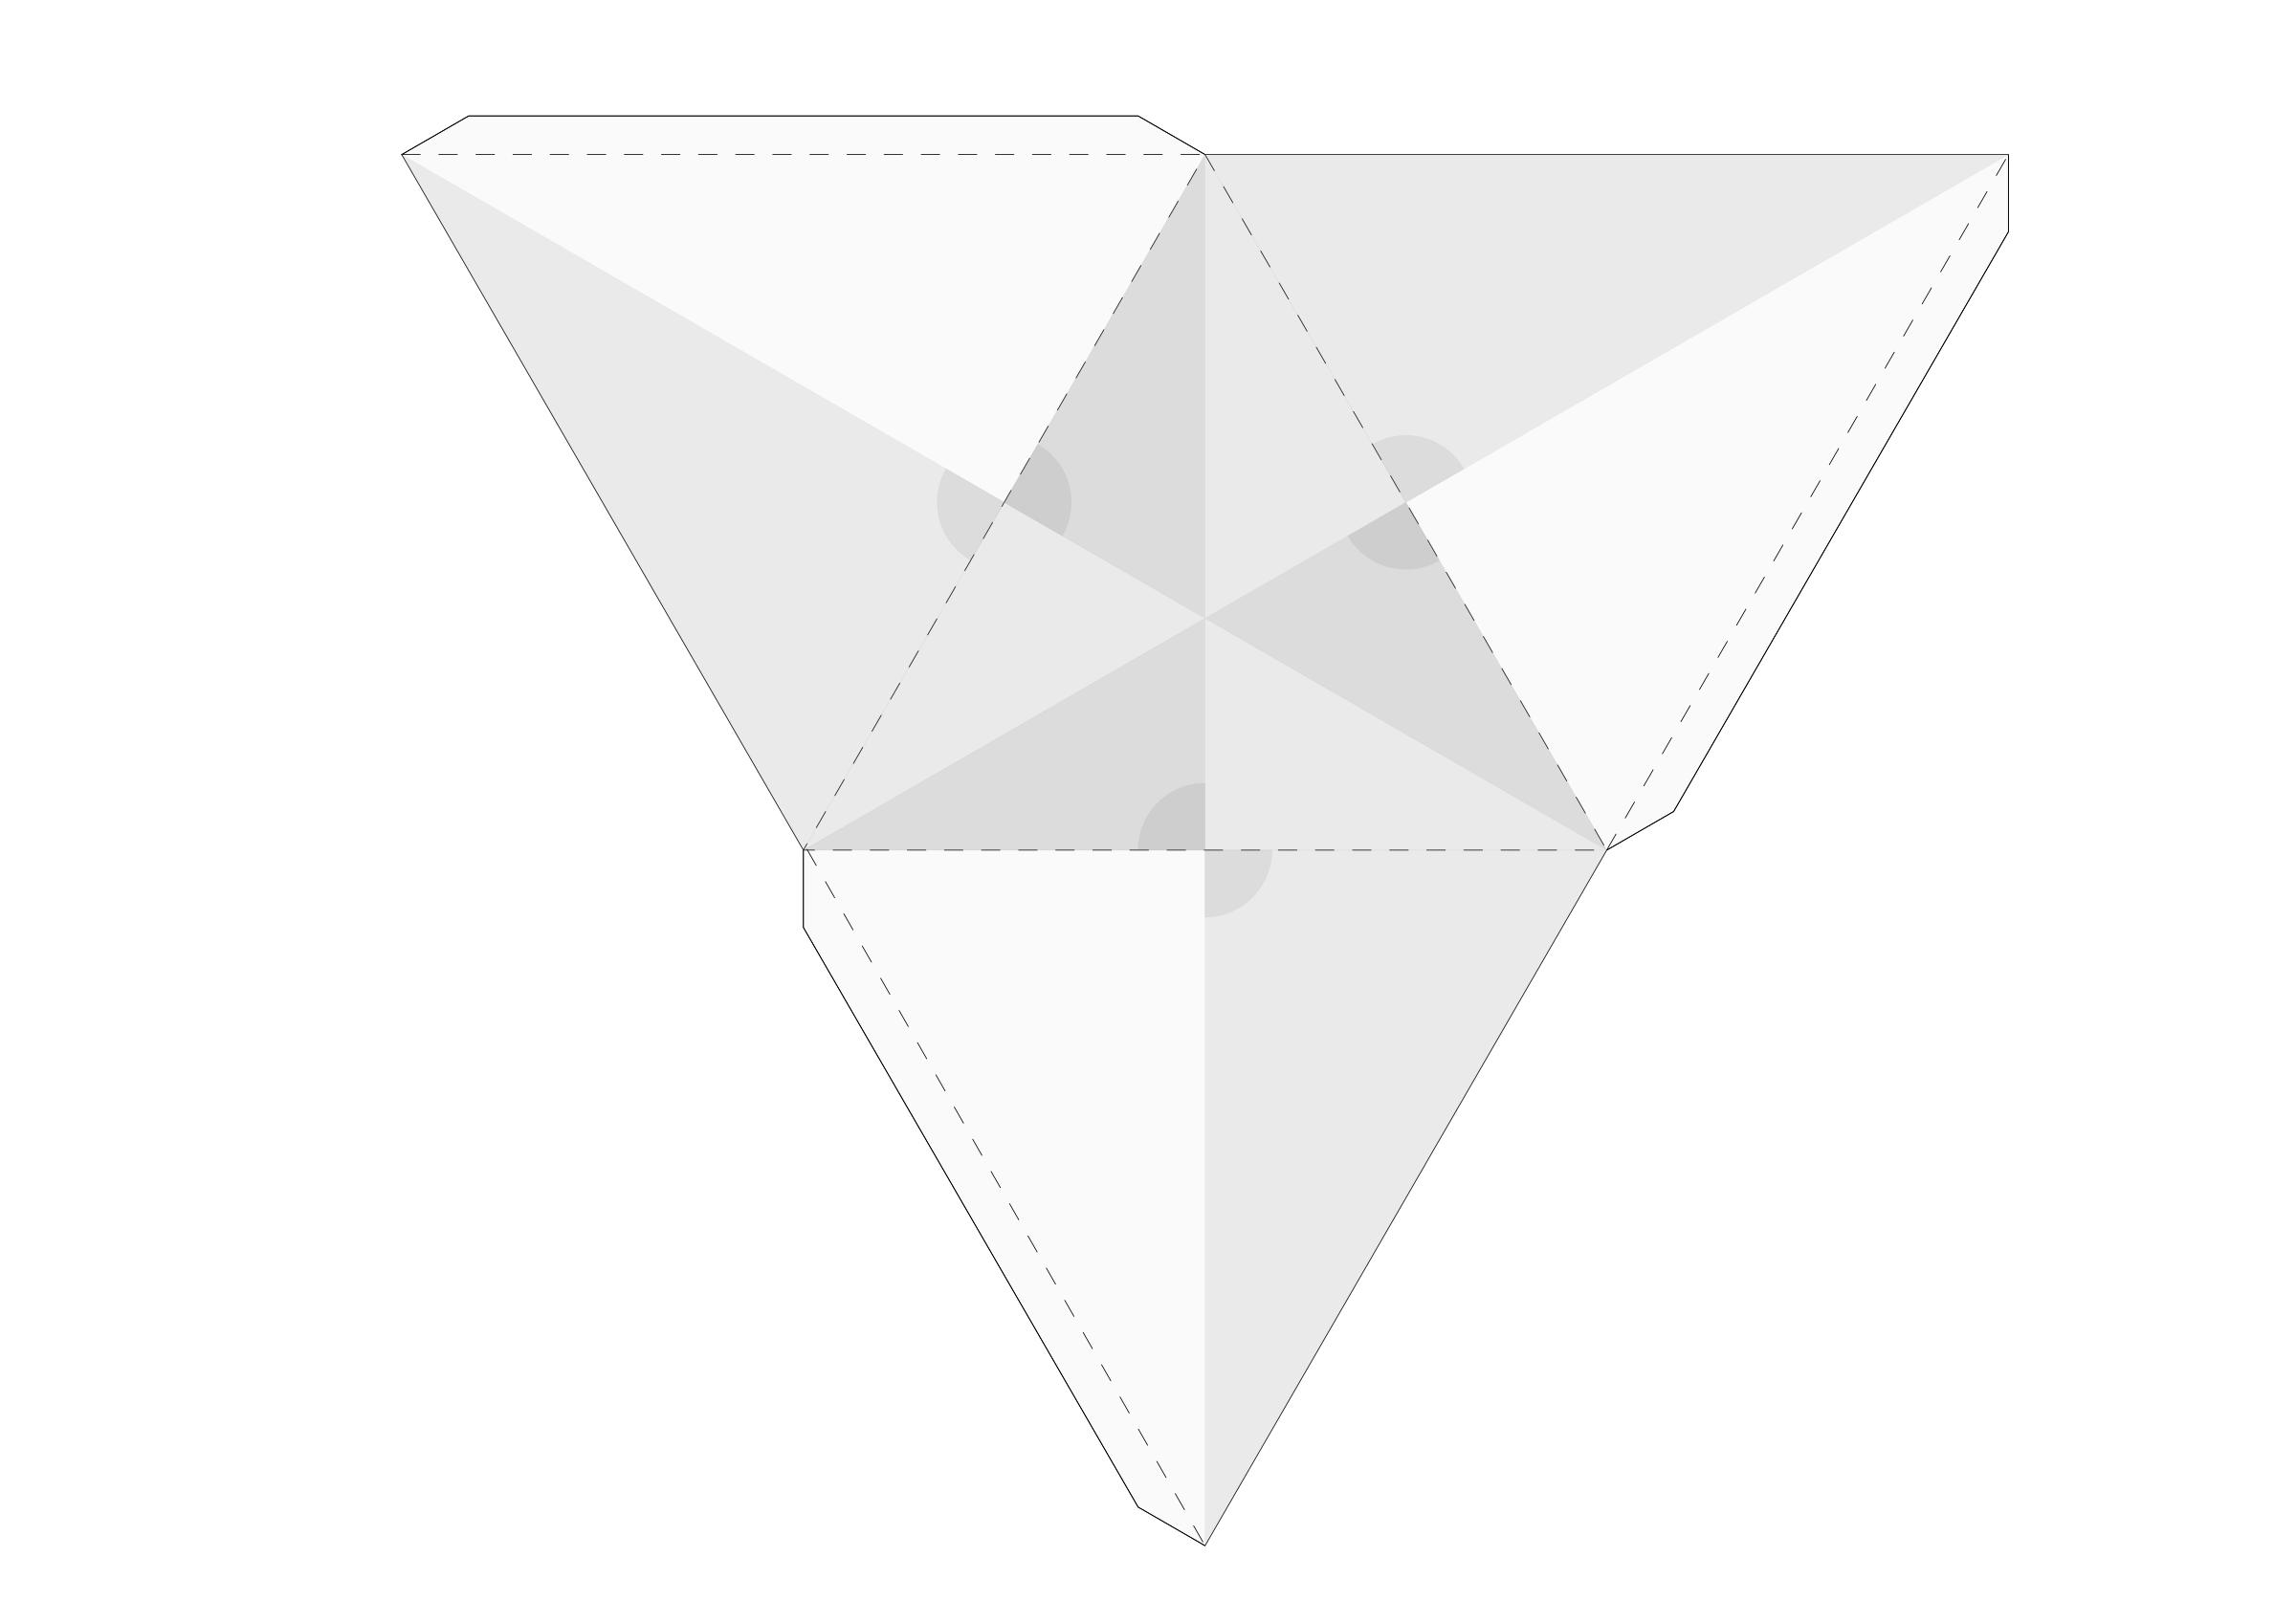 tetrahedron.net -- Tetraeder Netz png